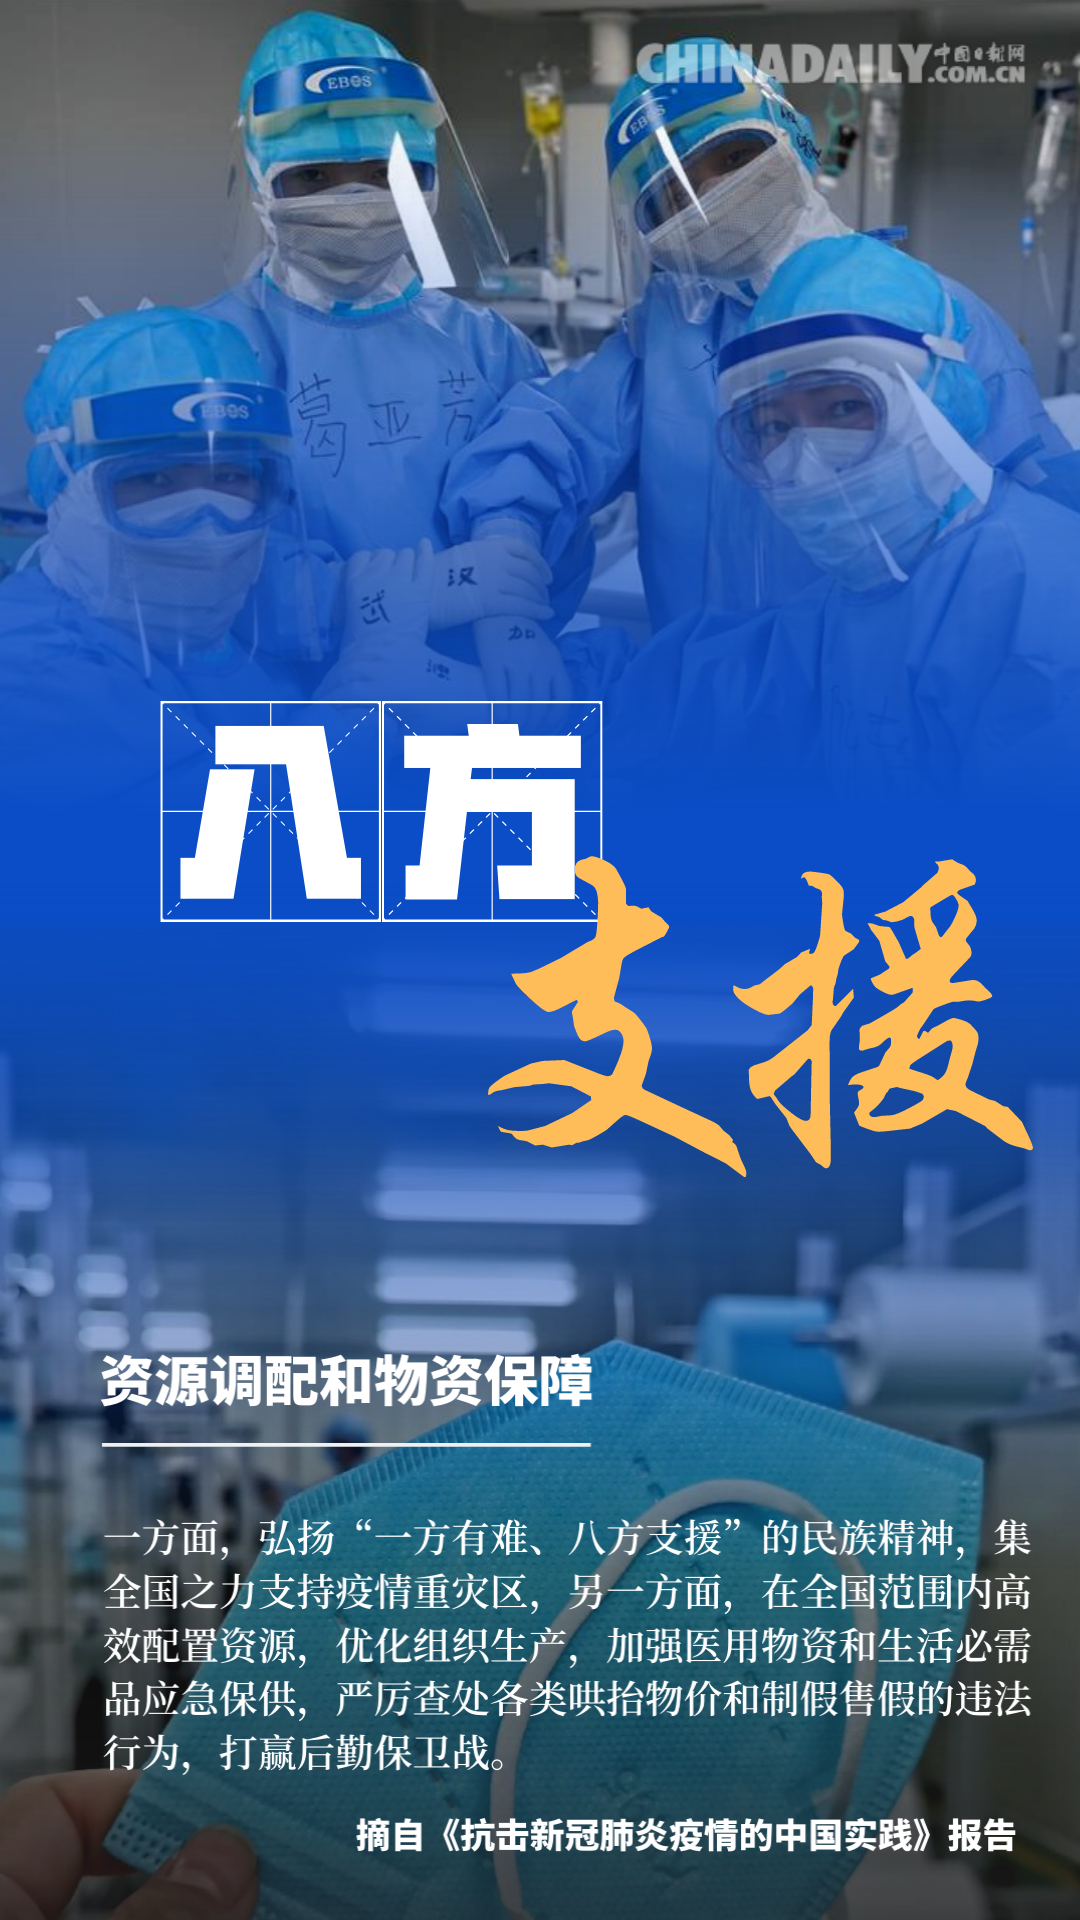 海报 抗击新冠肺炎疫情的中国实践新闻中心中国网 2190